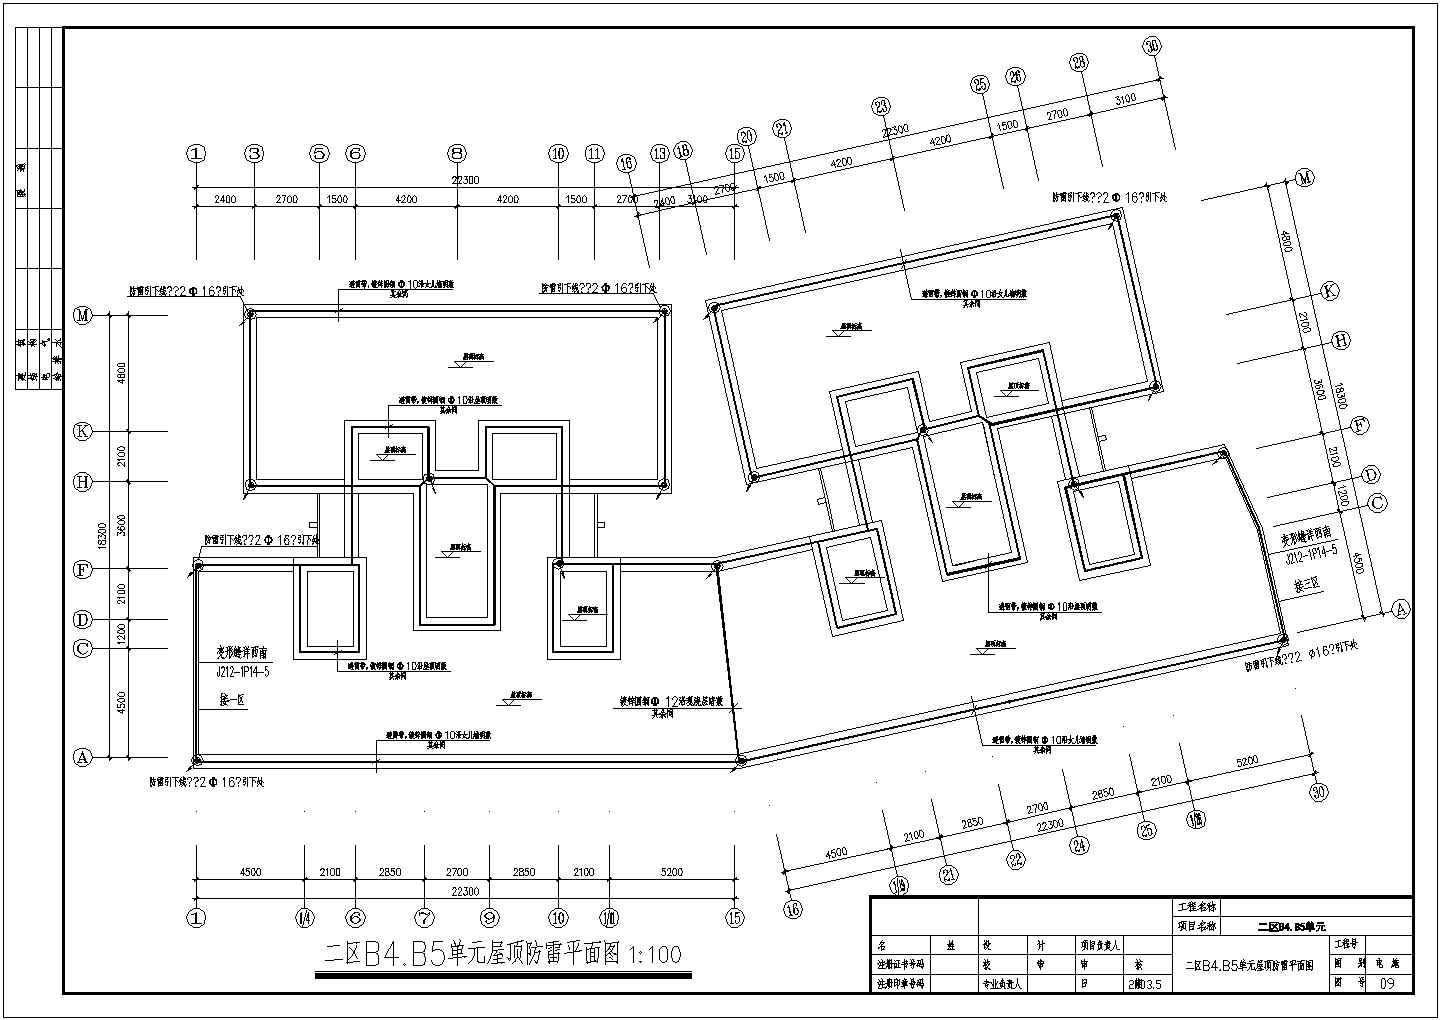 某多层住宅建筑楼强弱电CAD平面设计图(含低压配电干线系统图)